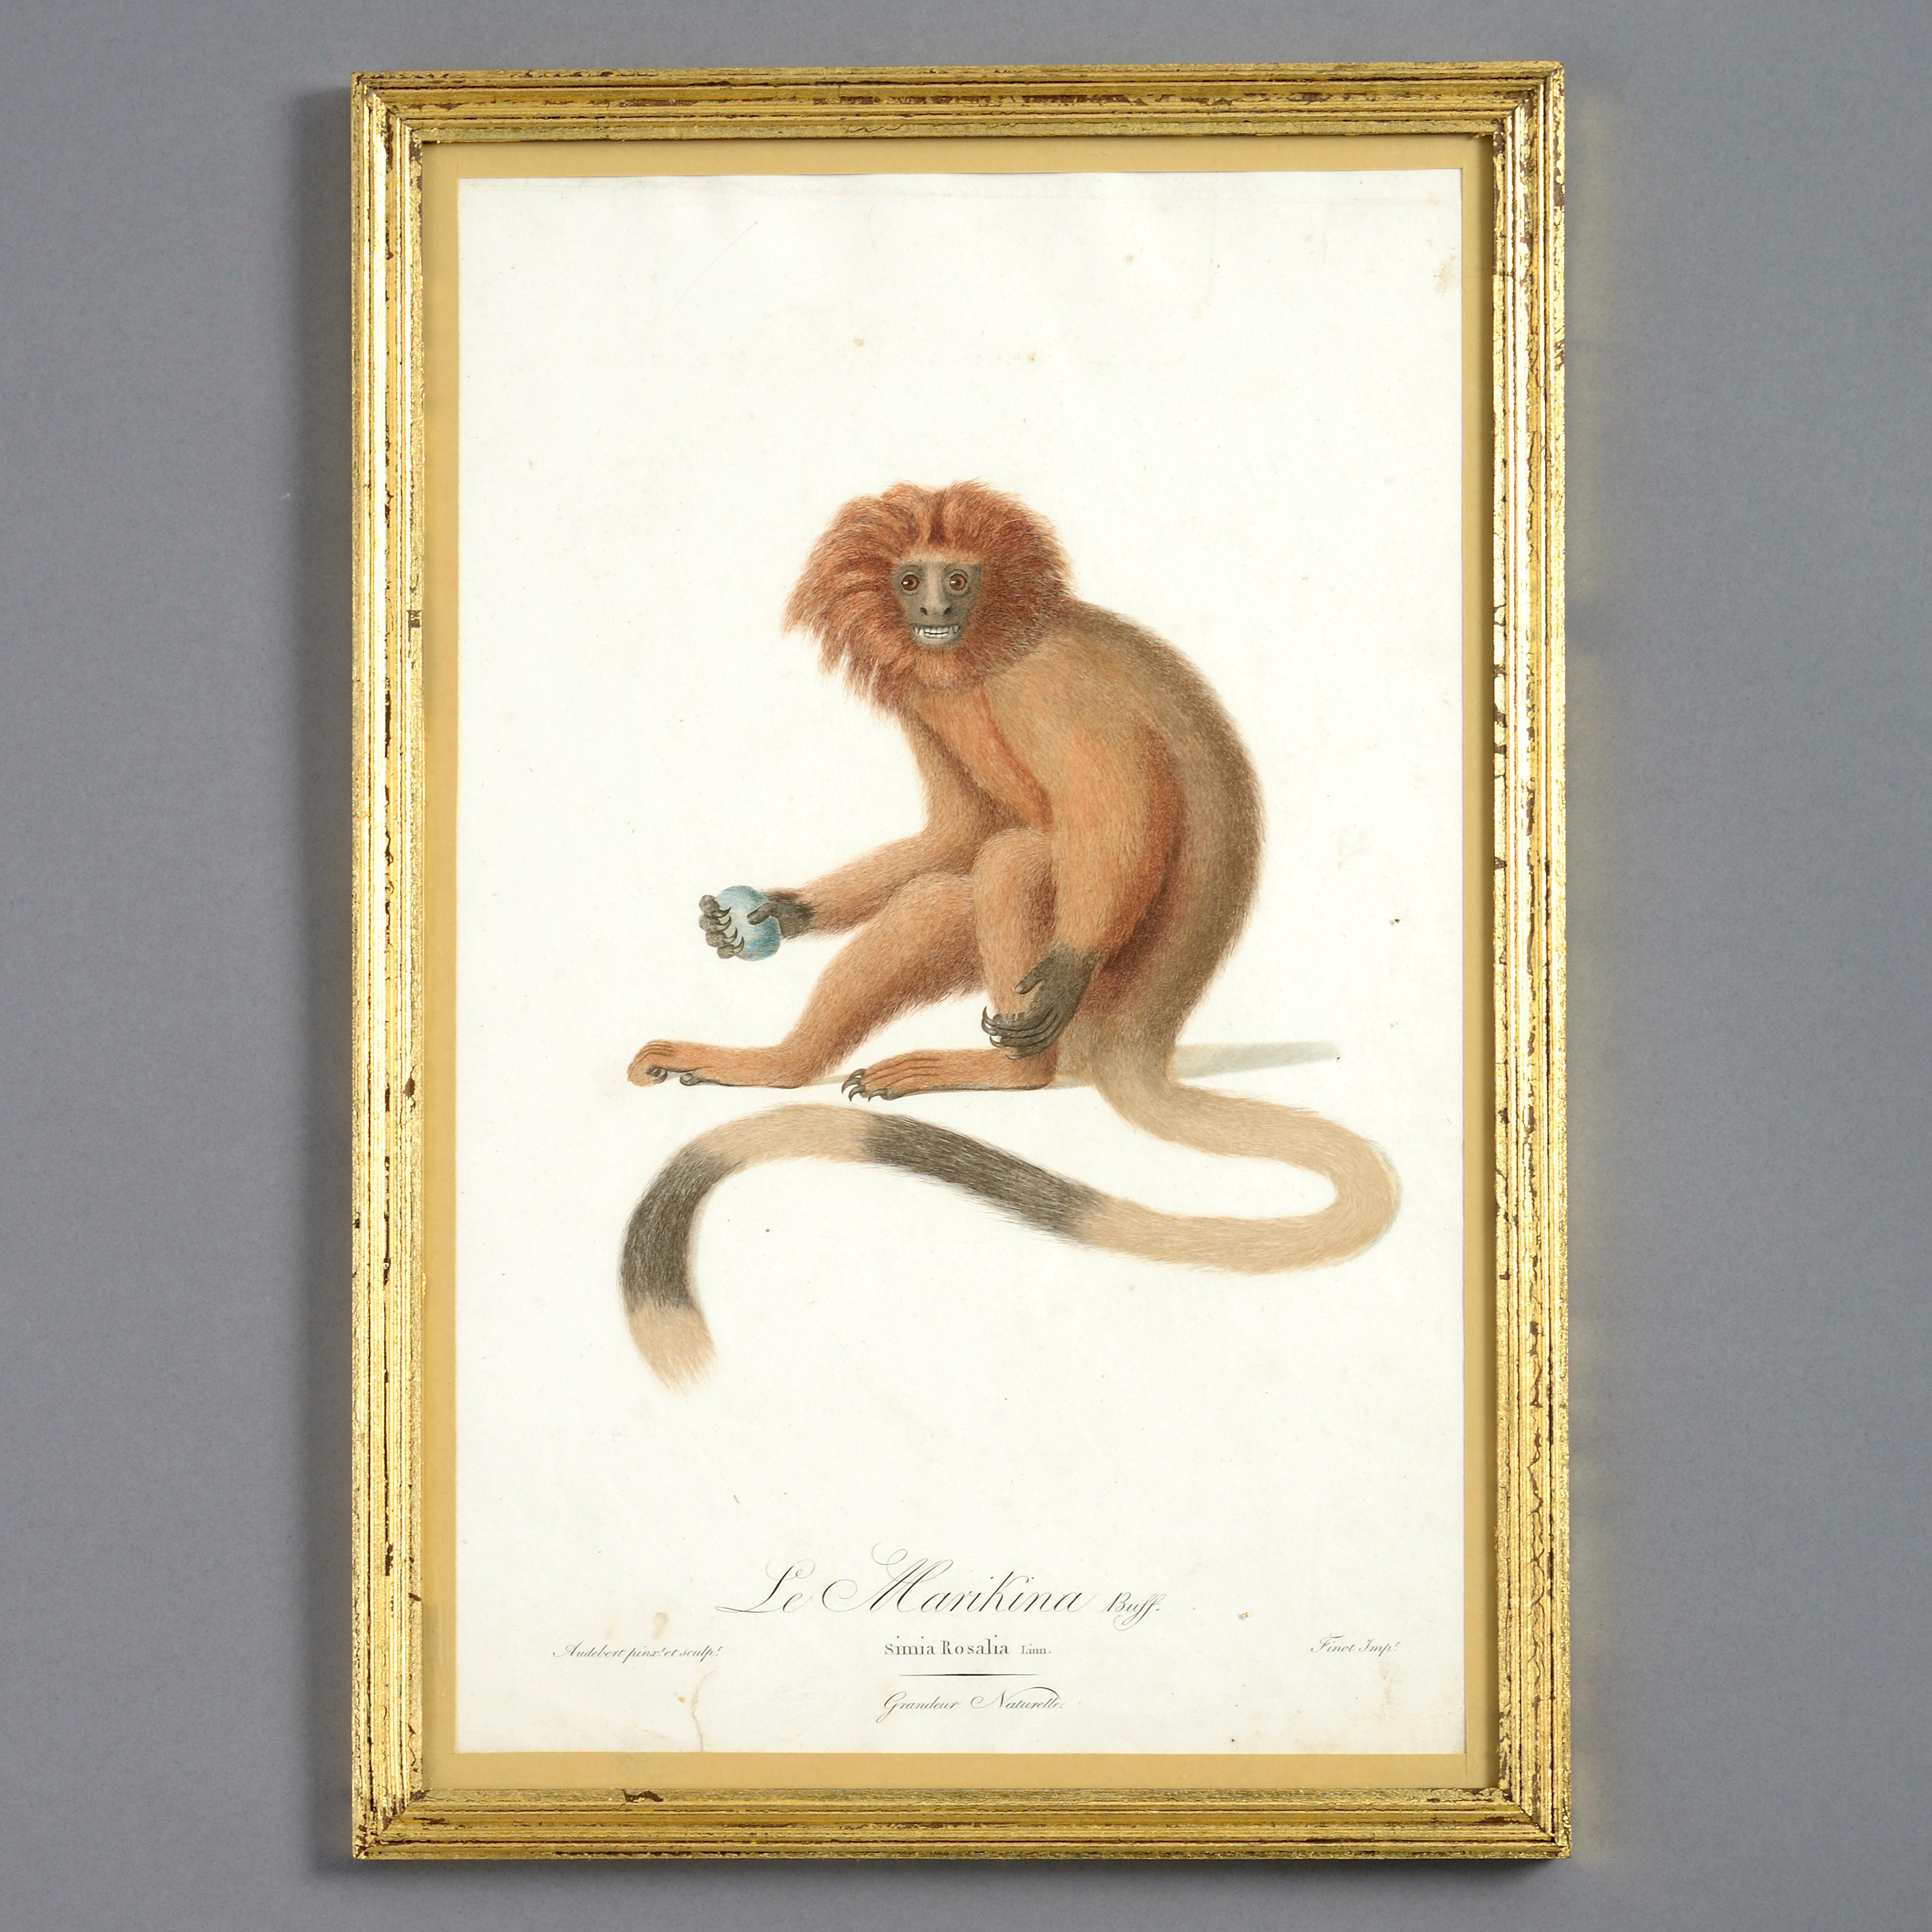 Quatre gravures de singes colorées à la main de la fin du XVIIIe siècle - Naturalisme Print par Unknown